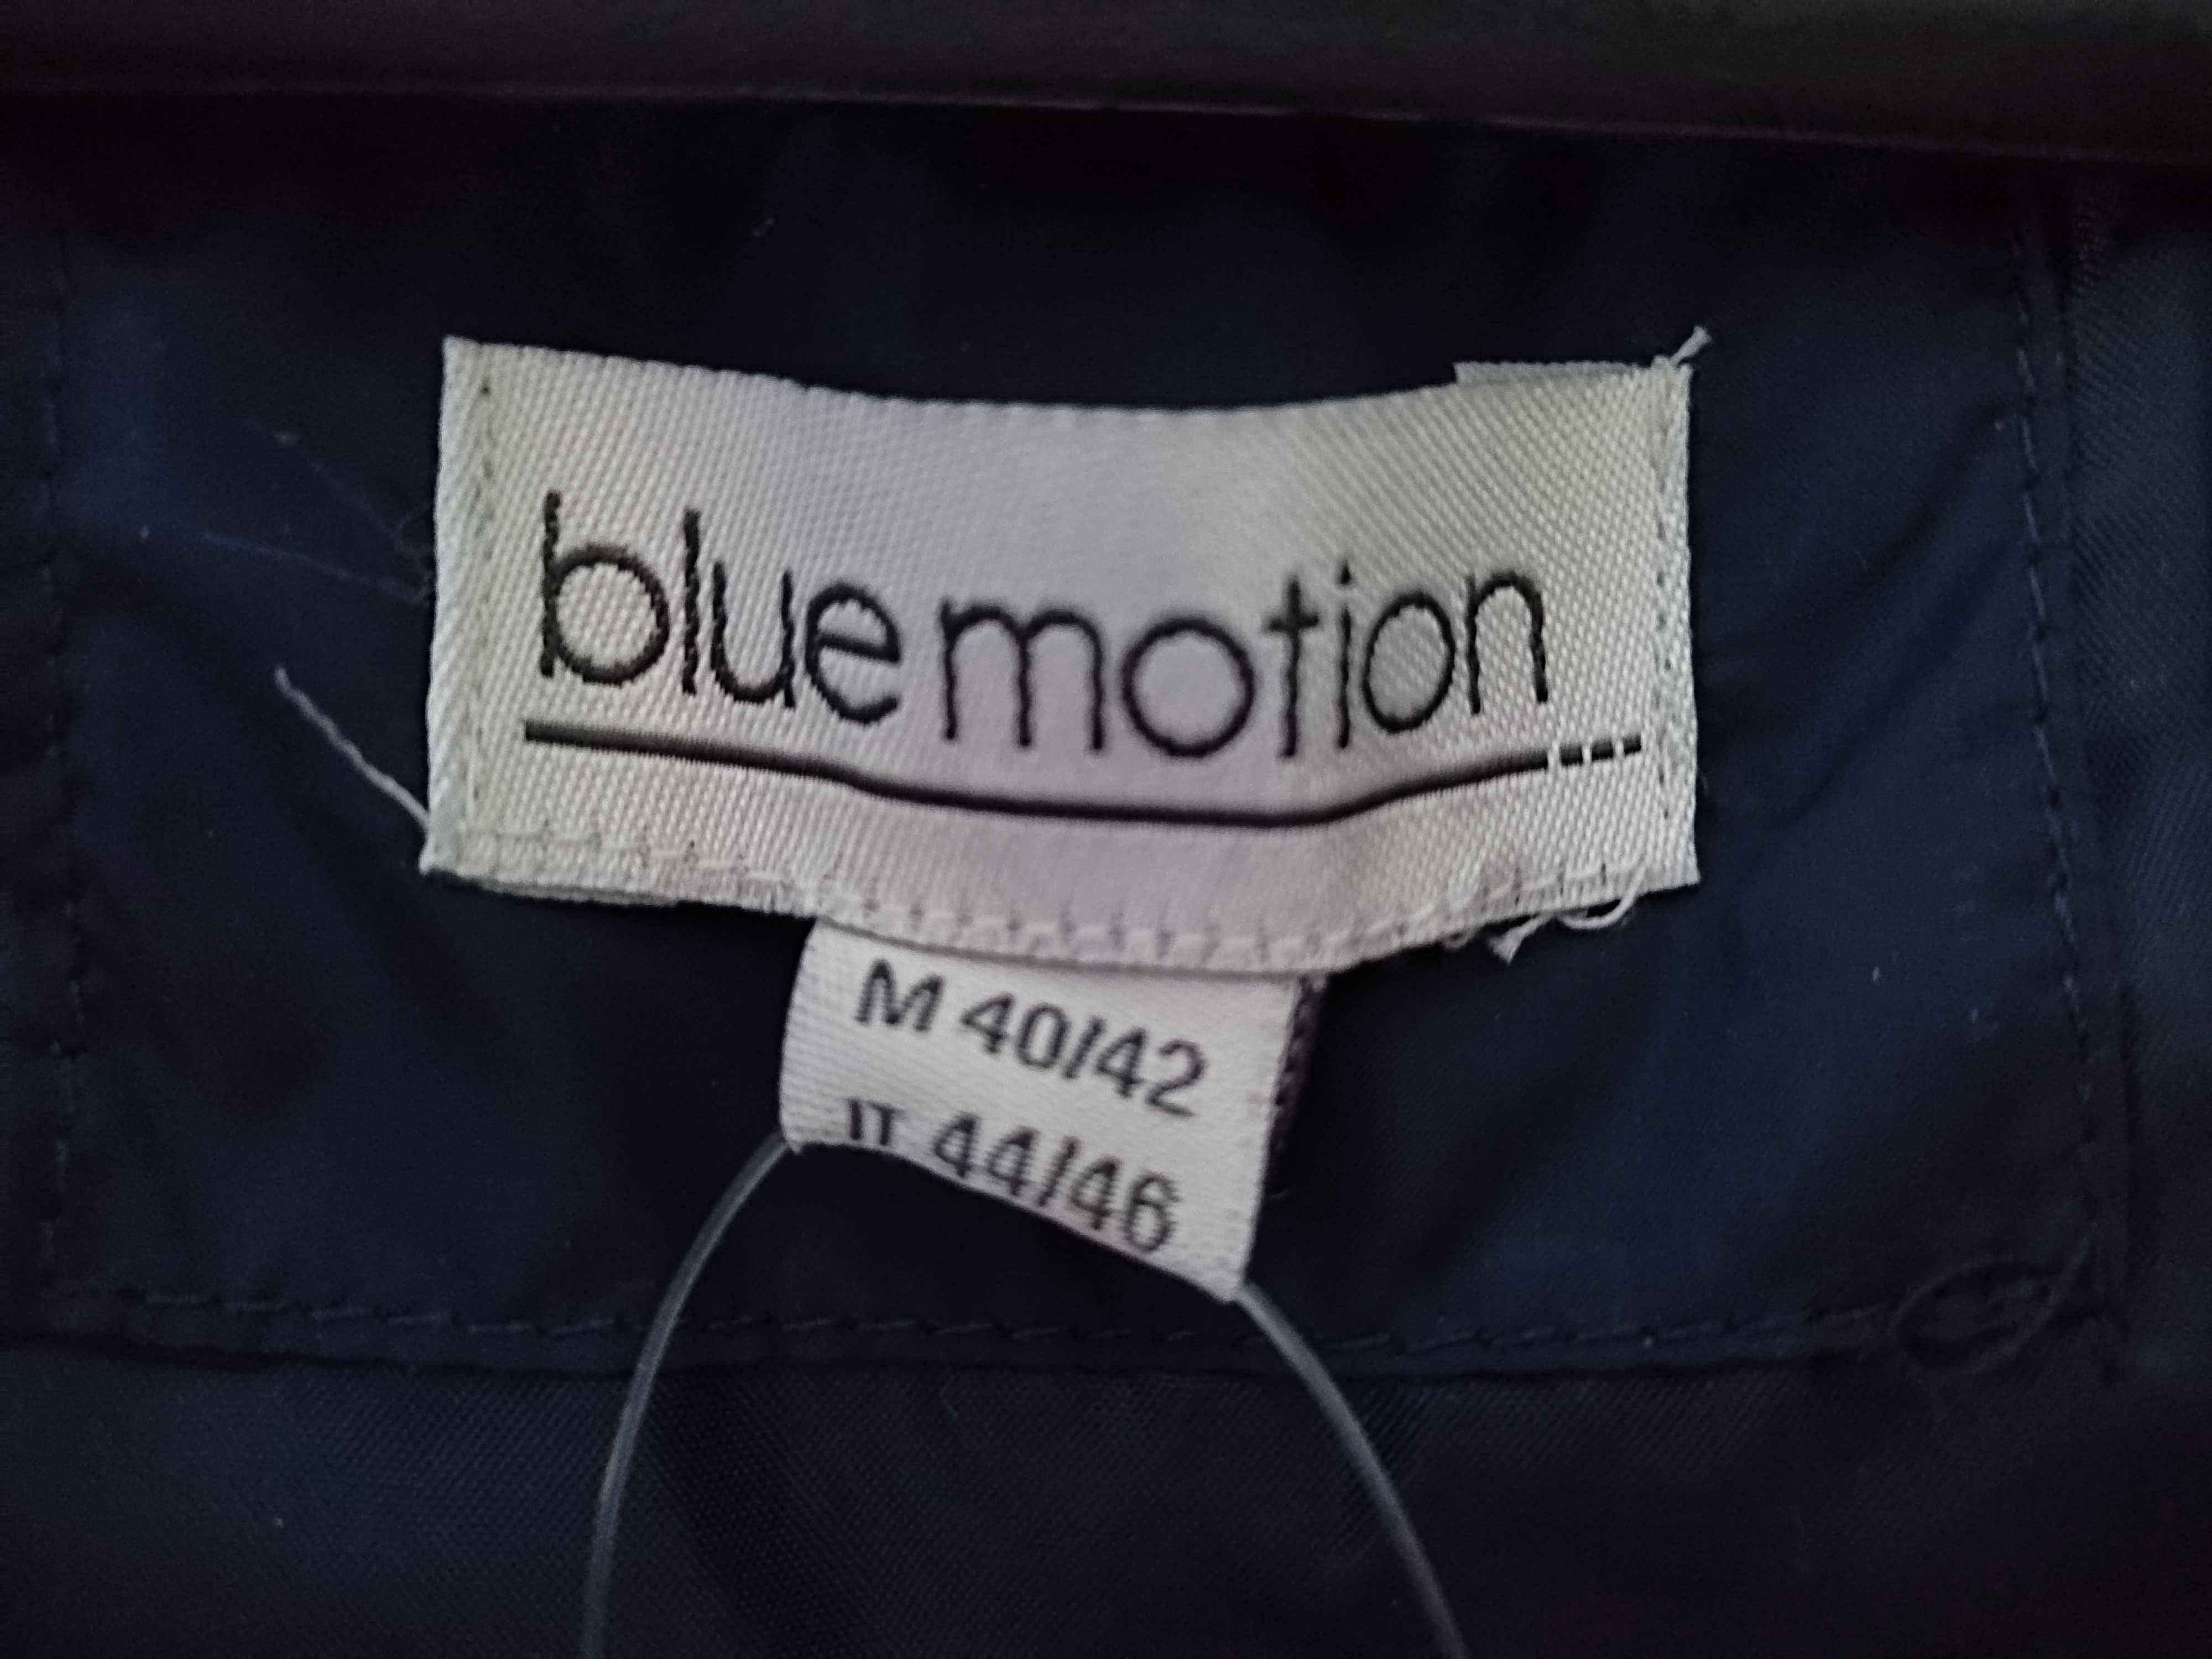 Jachetă bărbătească Blue Motion